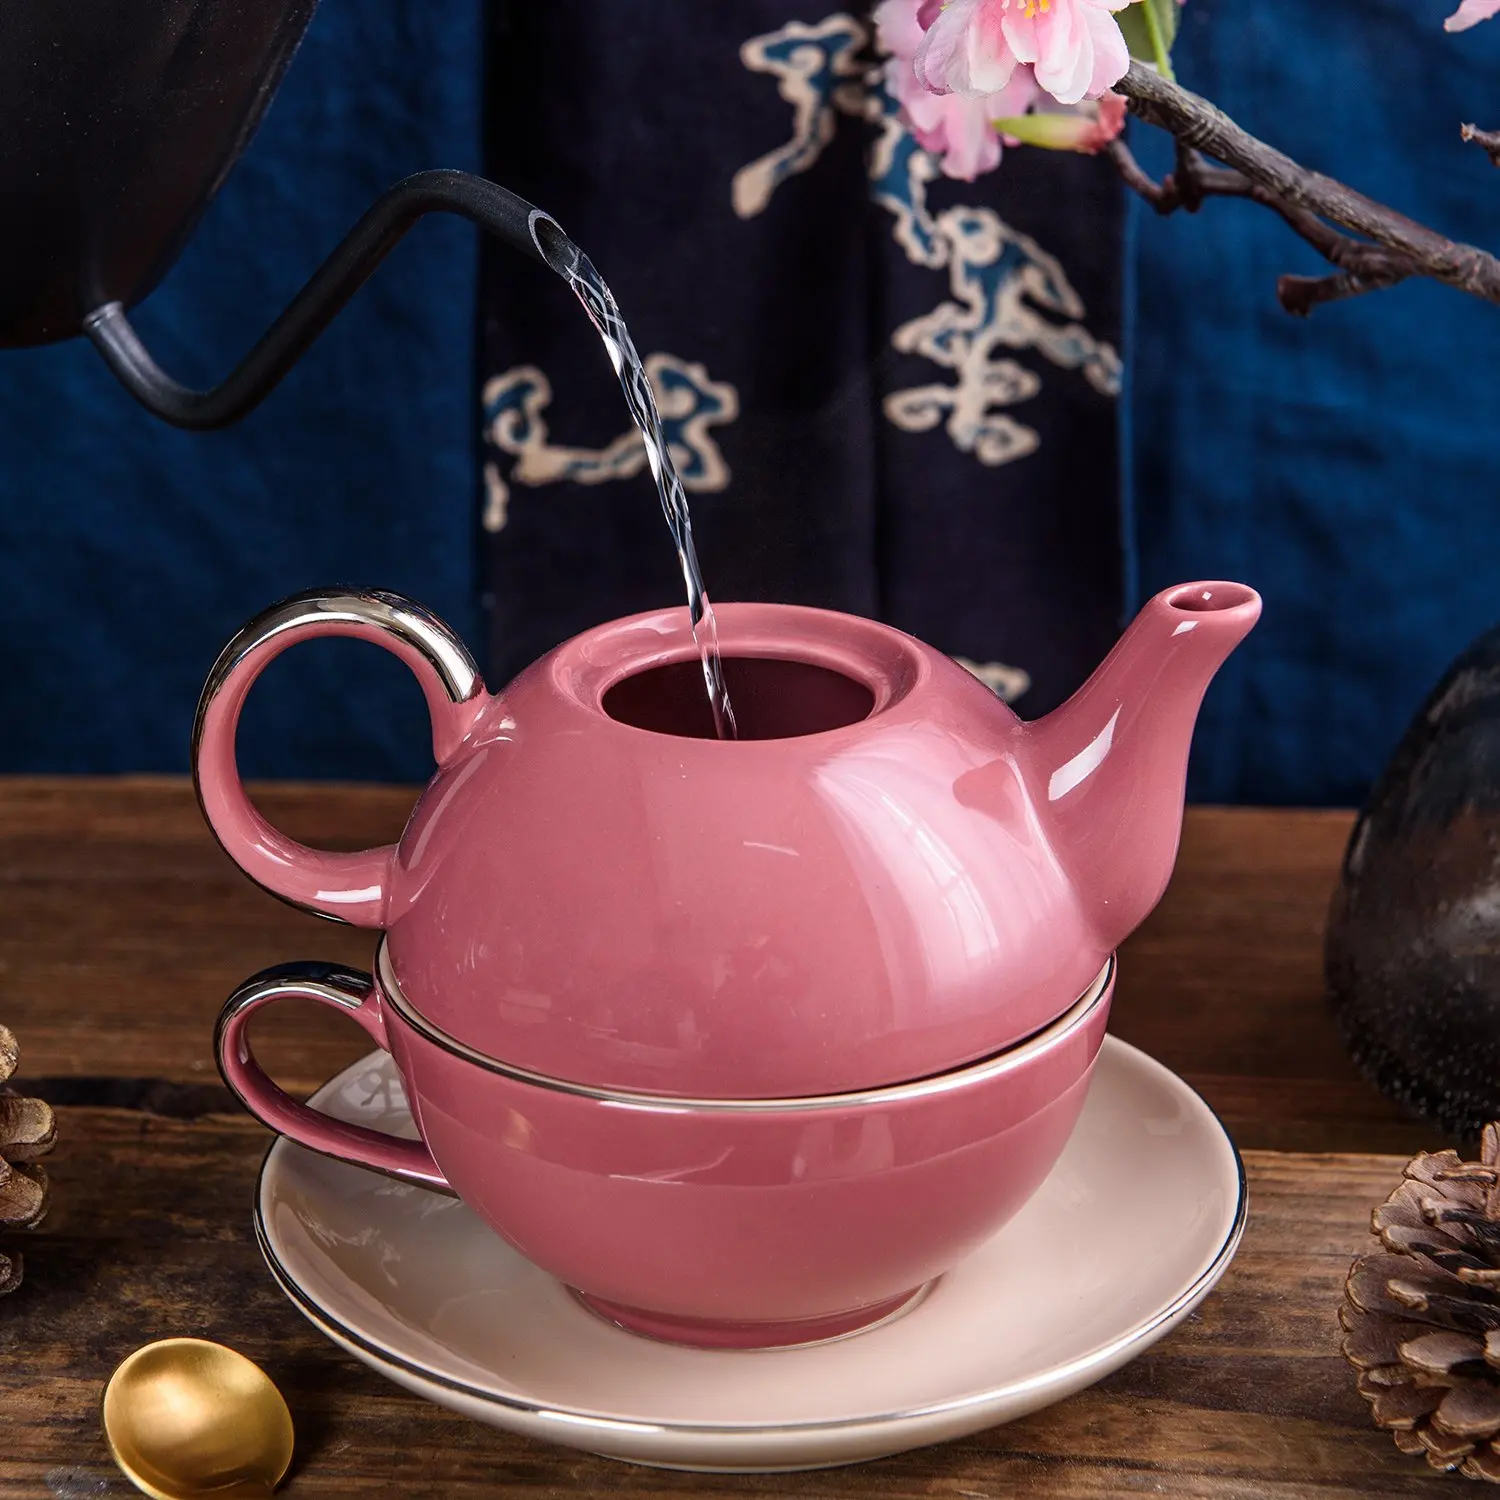 Café y té Servicio té y Artvigor Tetera de Porcelana Juego de té Colorido Regalo para Navidad y cumpleaños té para un Conjunto vemax.es